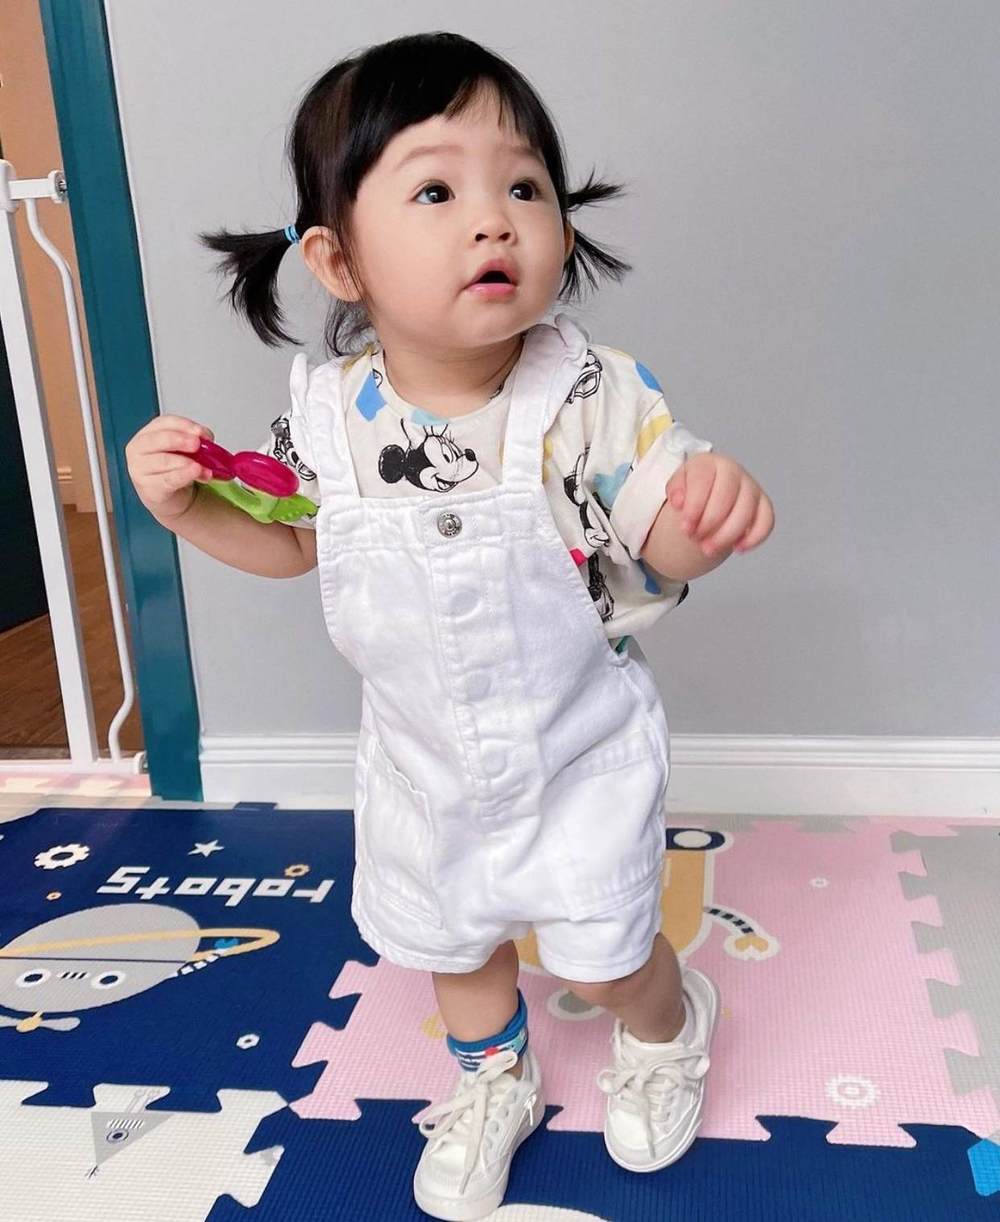  
Suchin được mẹ phối yếm trắng với áo họa tiết Mickey dễ thương. (Ảnh: Instagram suchin_baby)